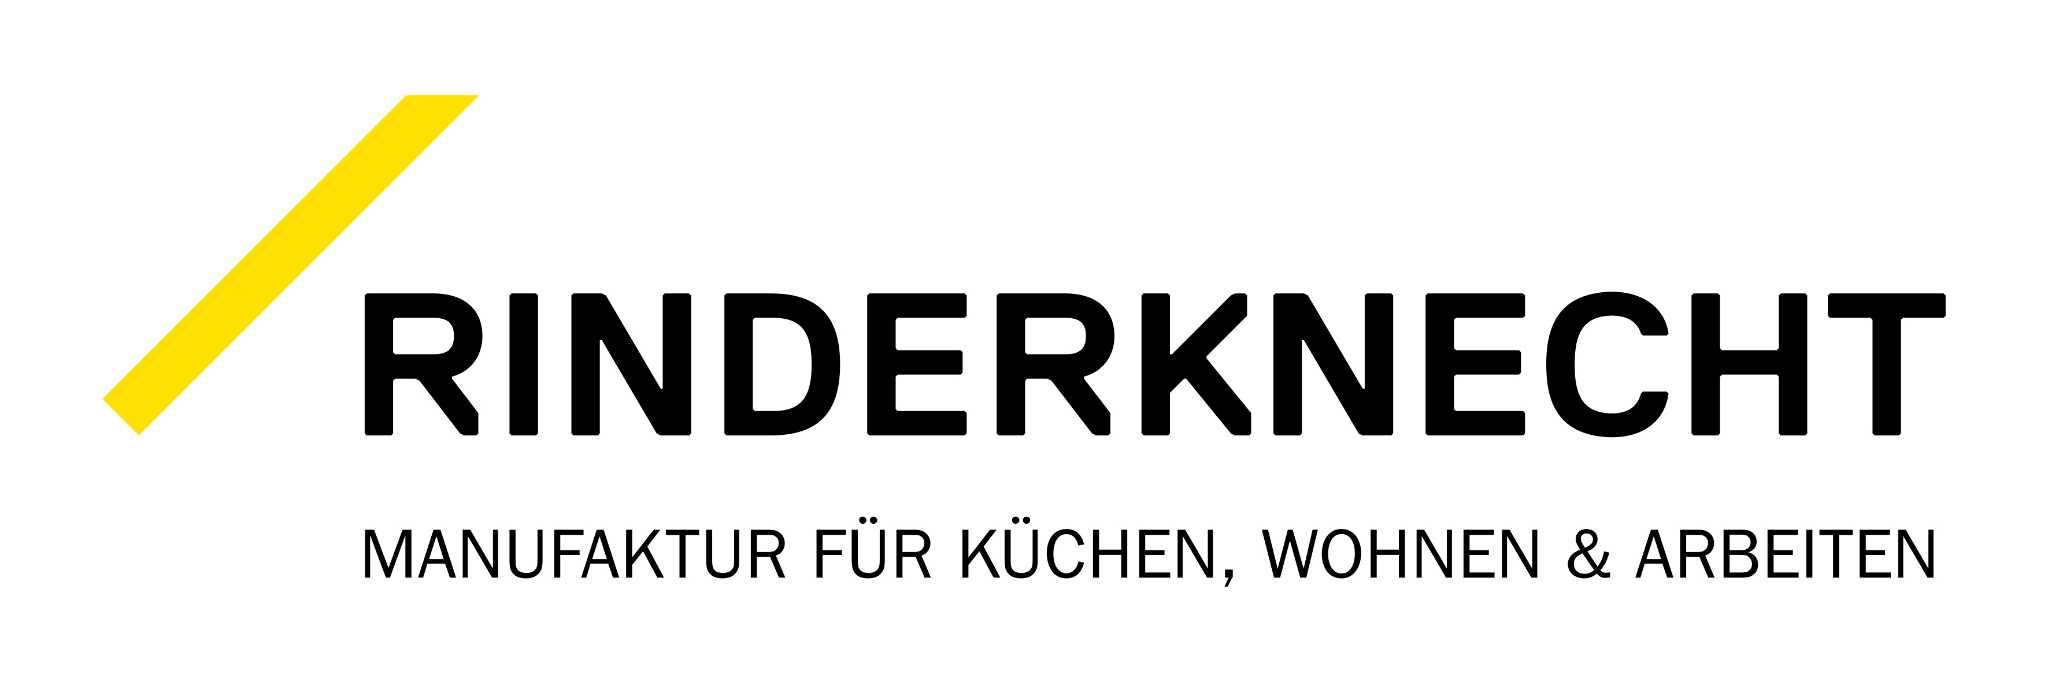 Rinderknecht AG